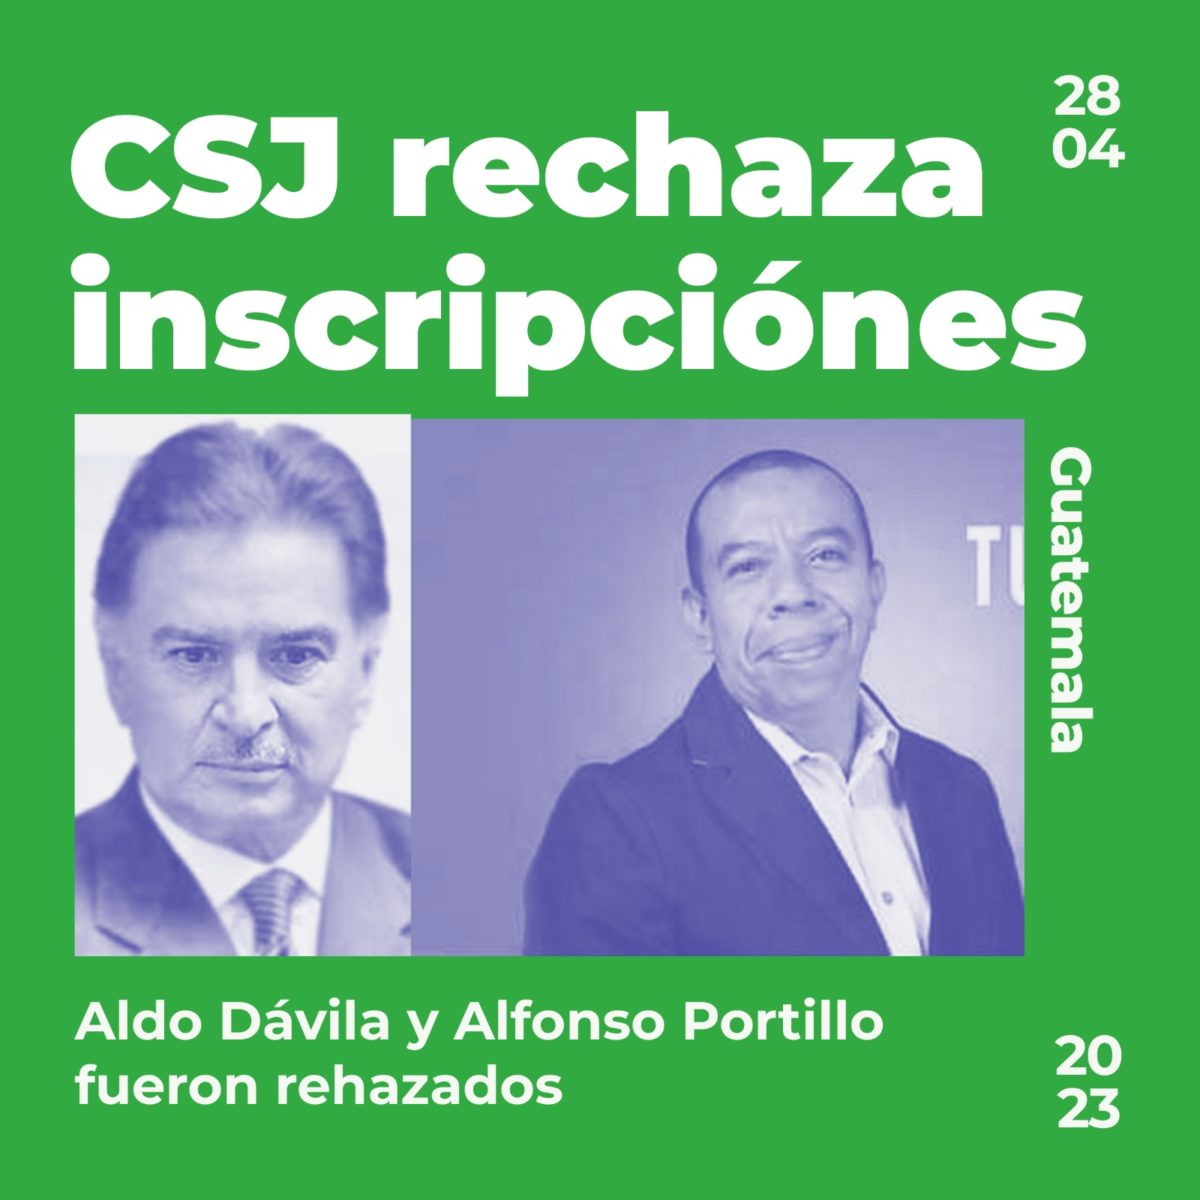 Aldo Dávila y Alfonso Portillo quedan fuera de la contienda electoral imagen